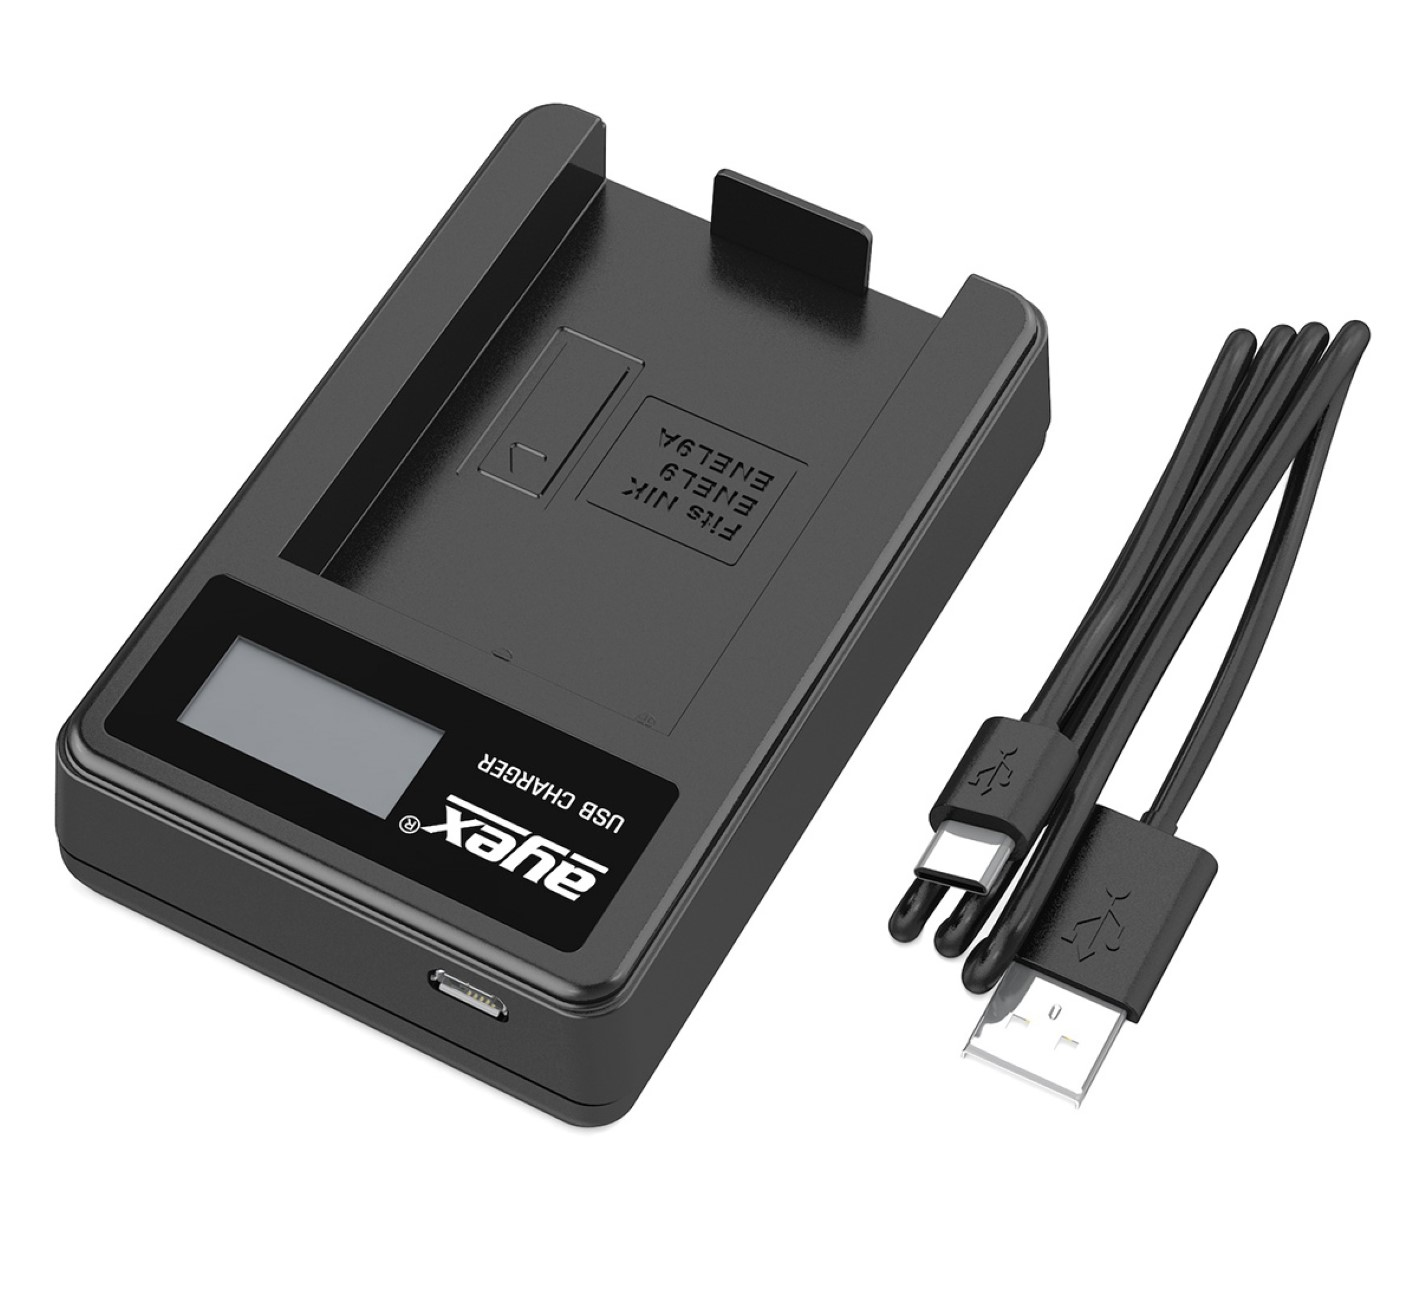 AYEX USB Ladegerät für Nikon EN-EL9A EN-EL9 Lader, Kamera-Akku Black Akku